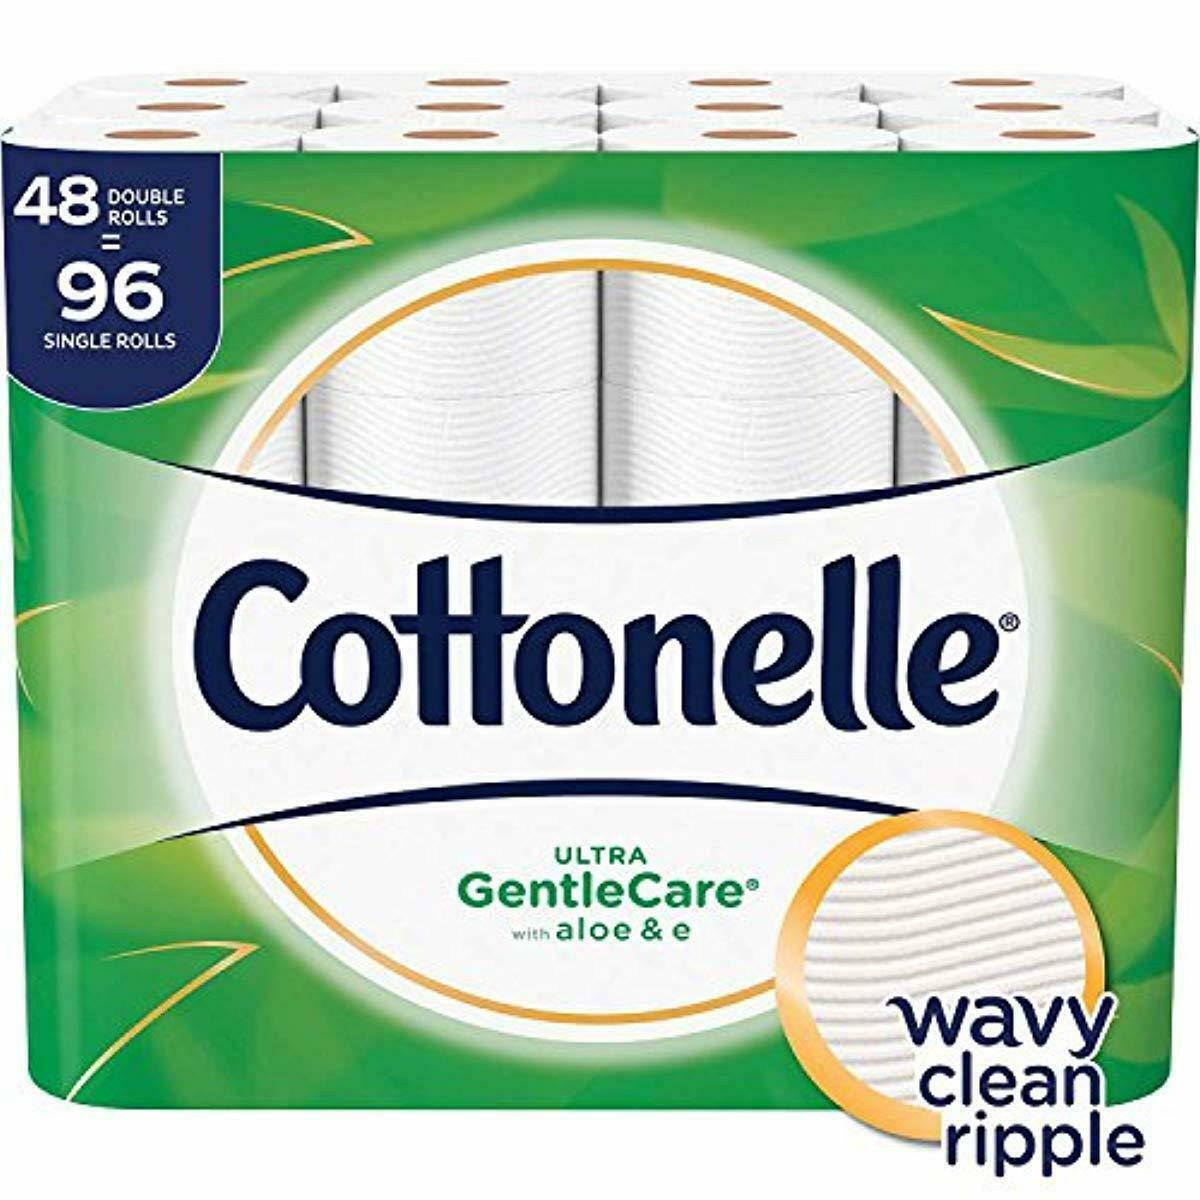 Cottonelle Ultra GentleCare Toilet Paper, Aloe Vitamin E, 48 Double ...